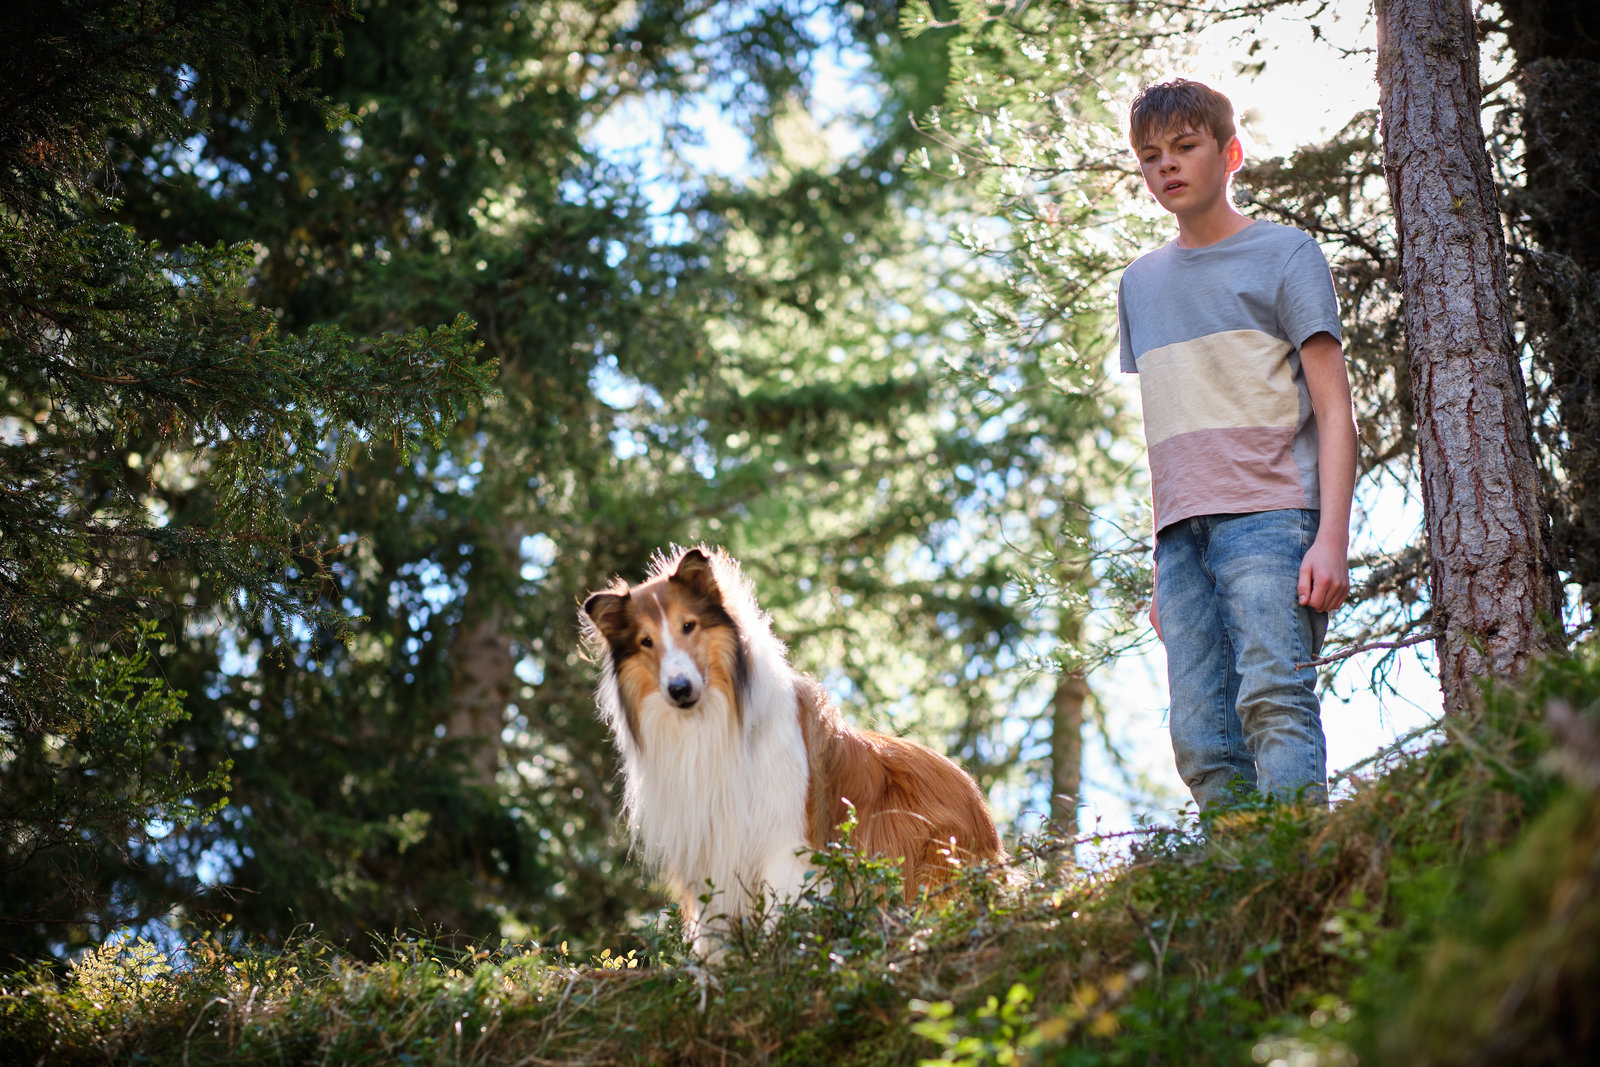 Lassie - Ein neues Abenteuer  (Blu-ray Disc)